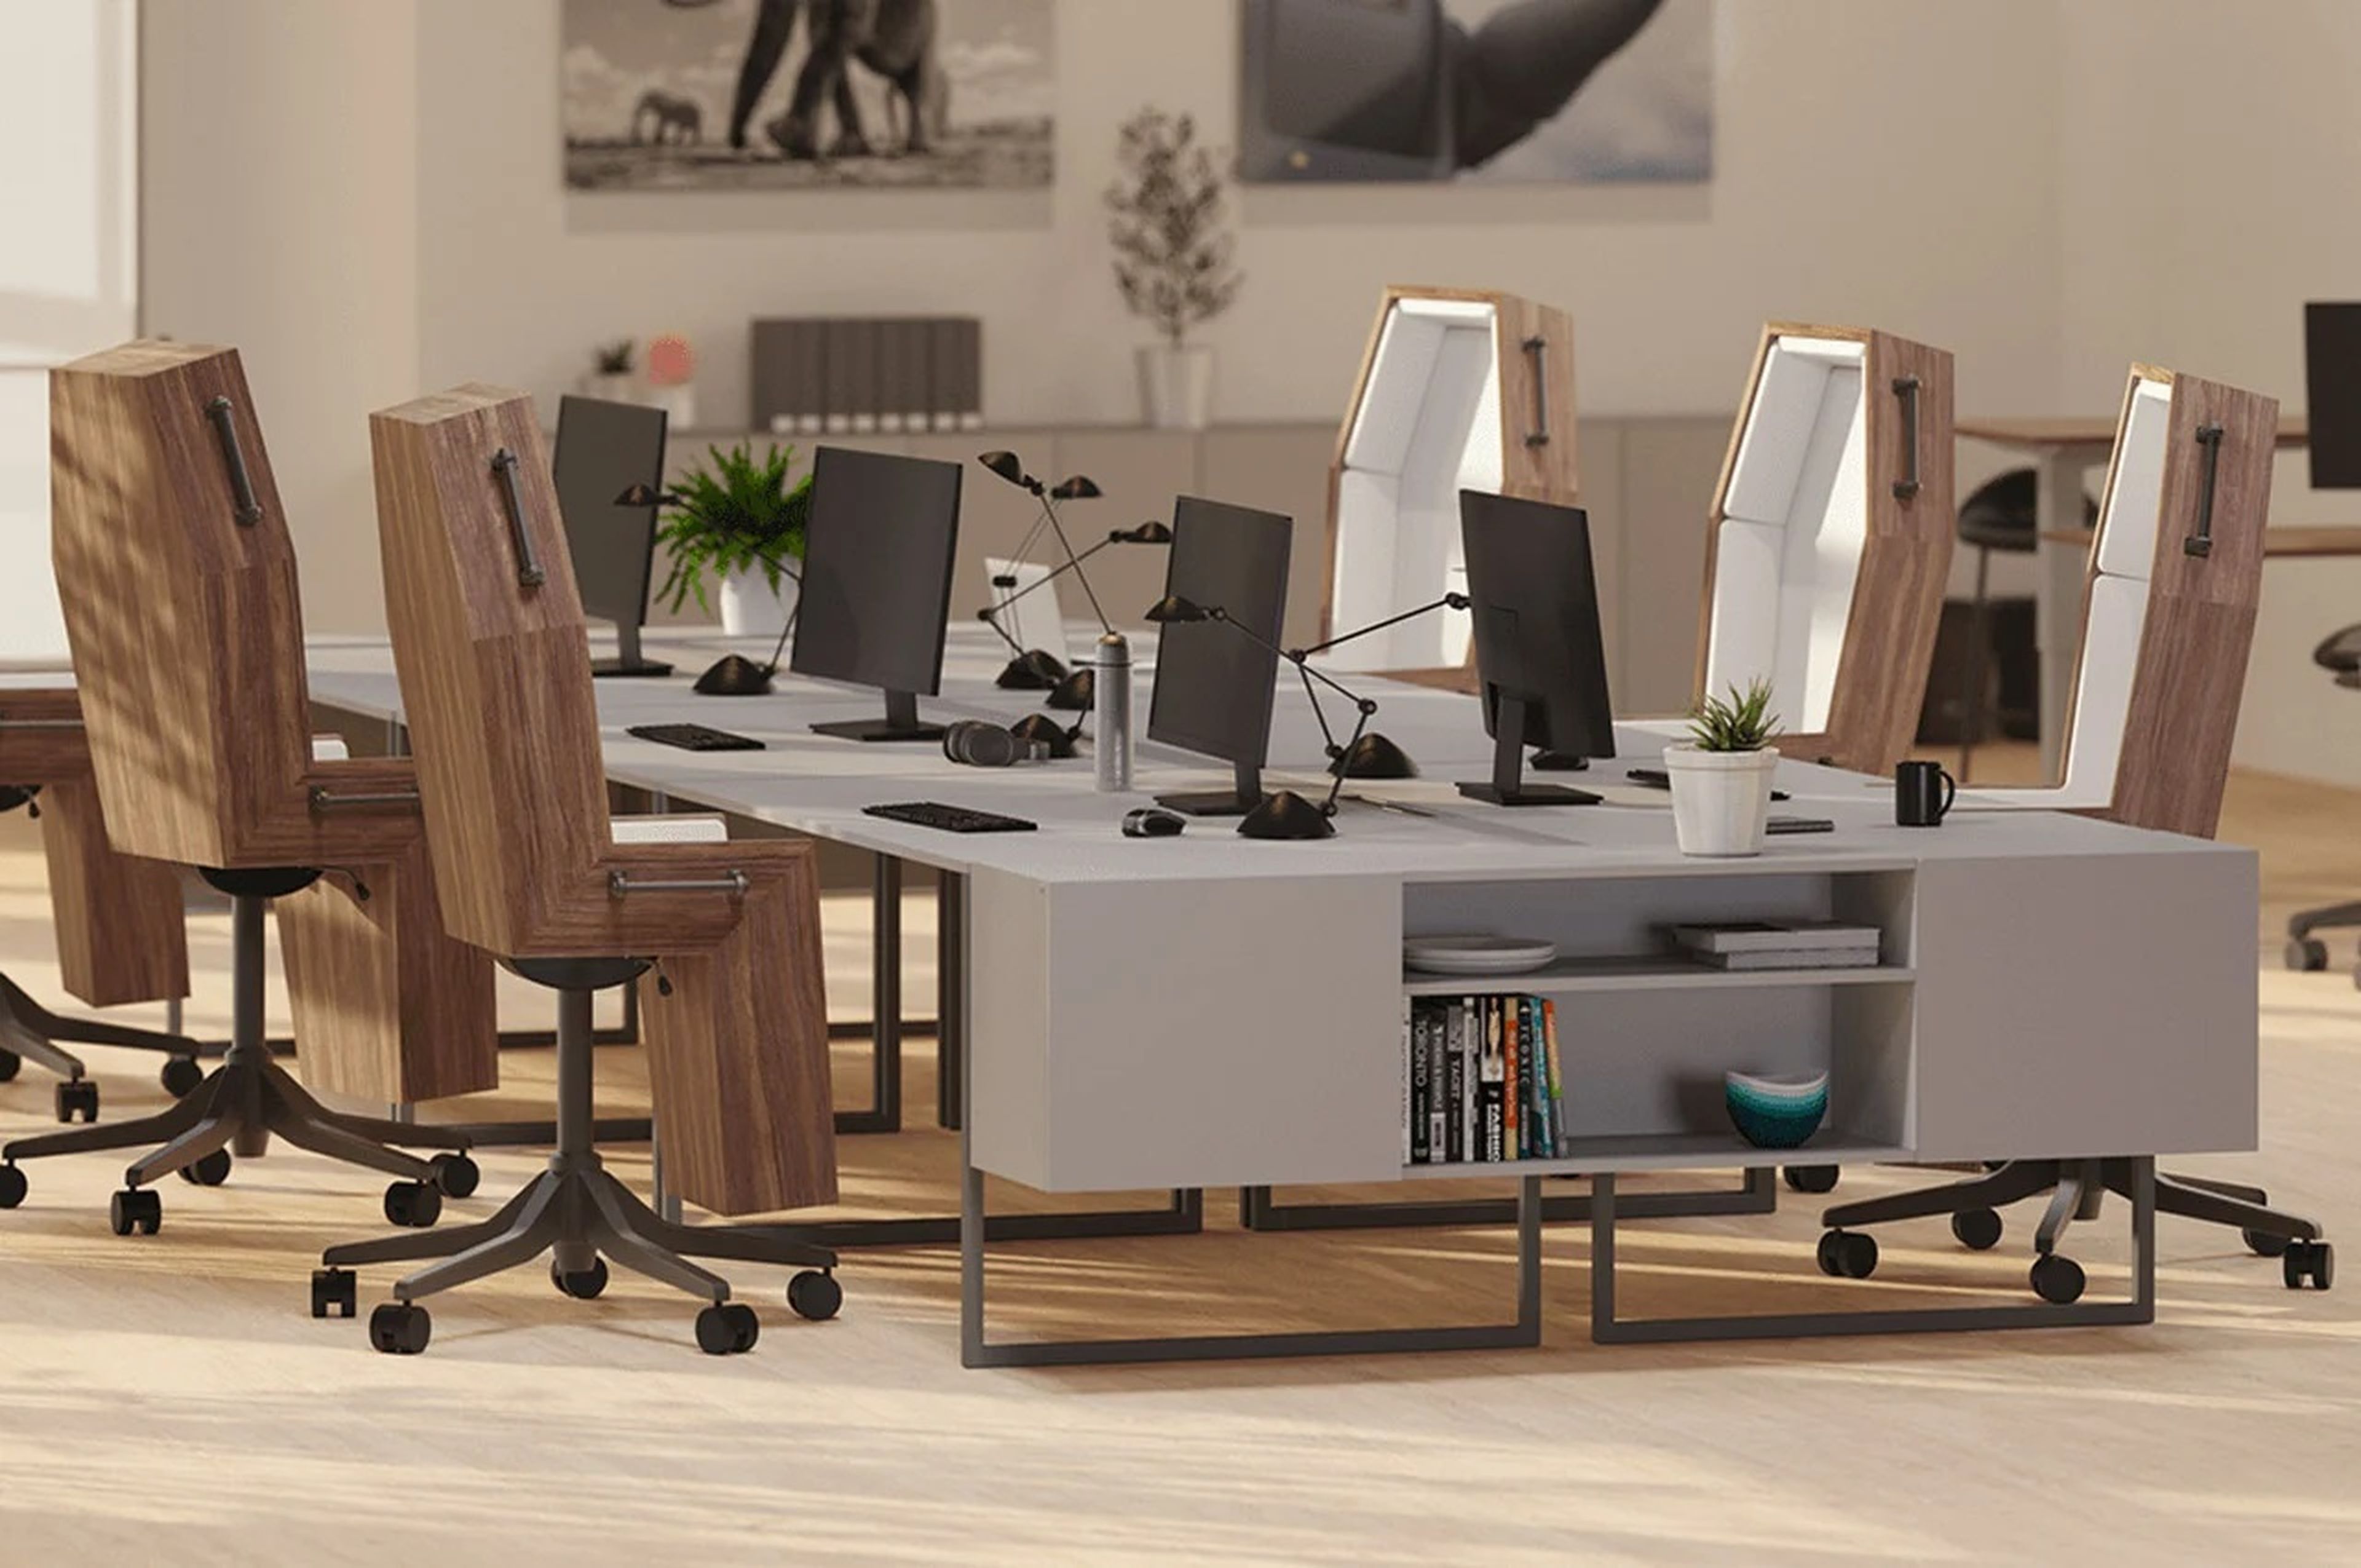 Las sillas de oficina con las que muchos se sentirán identificados en el trabajo